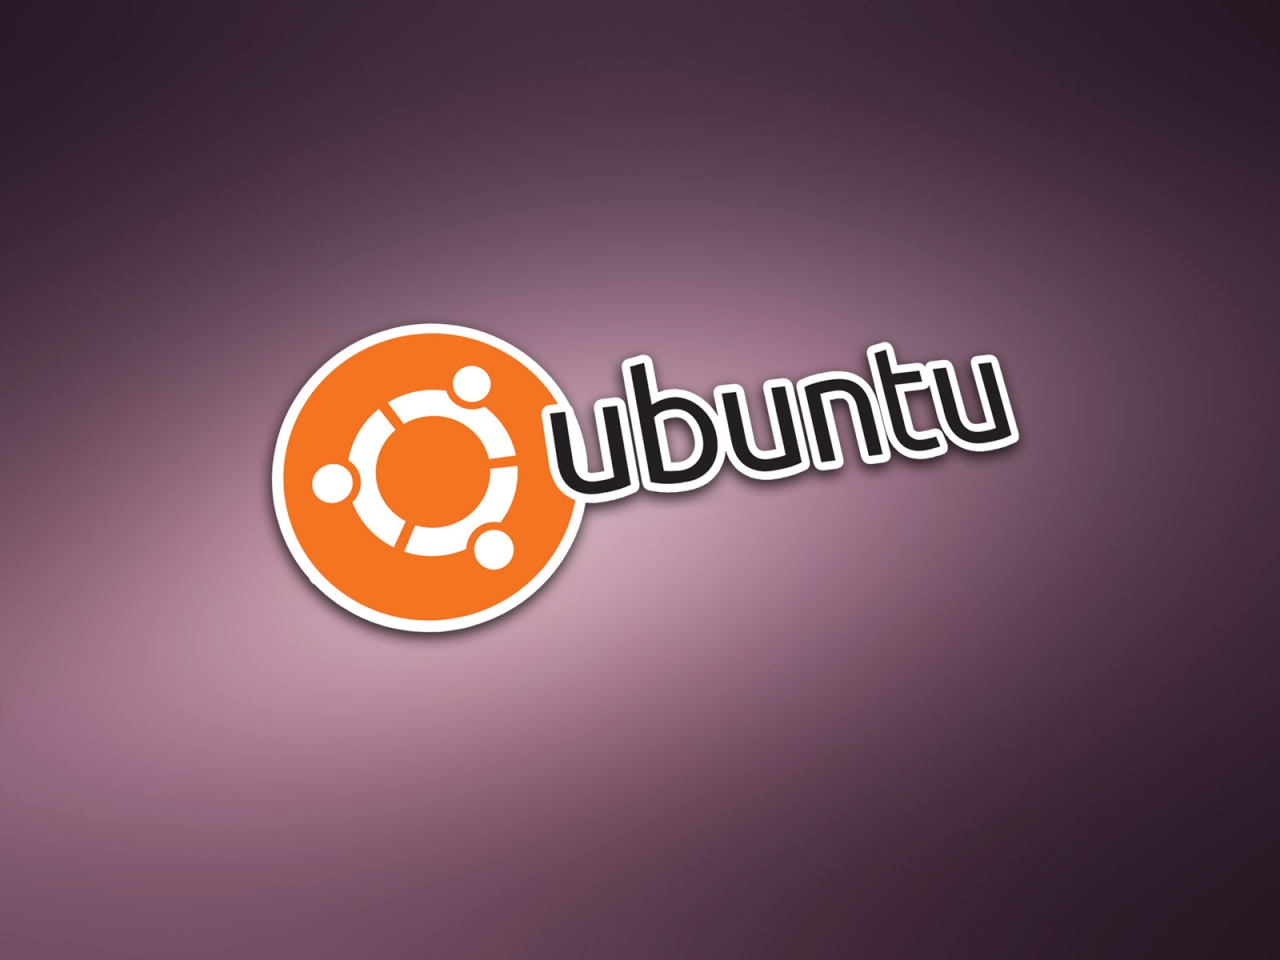 Ubuntu Modern Logo for 1280 x 960 resolution